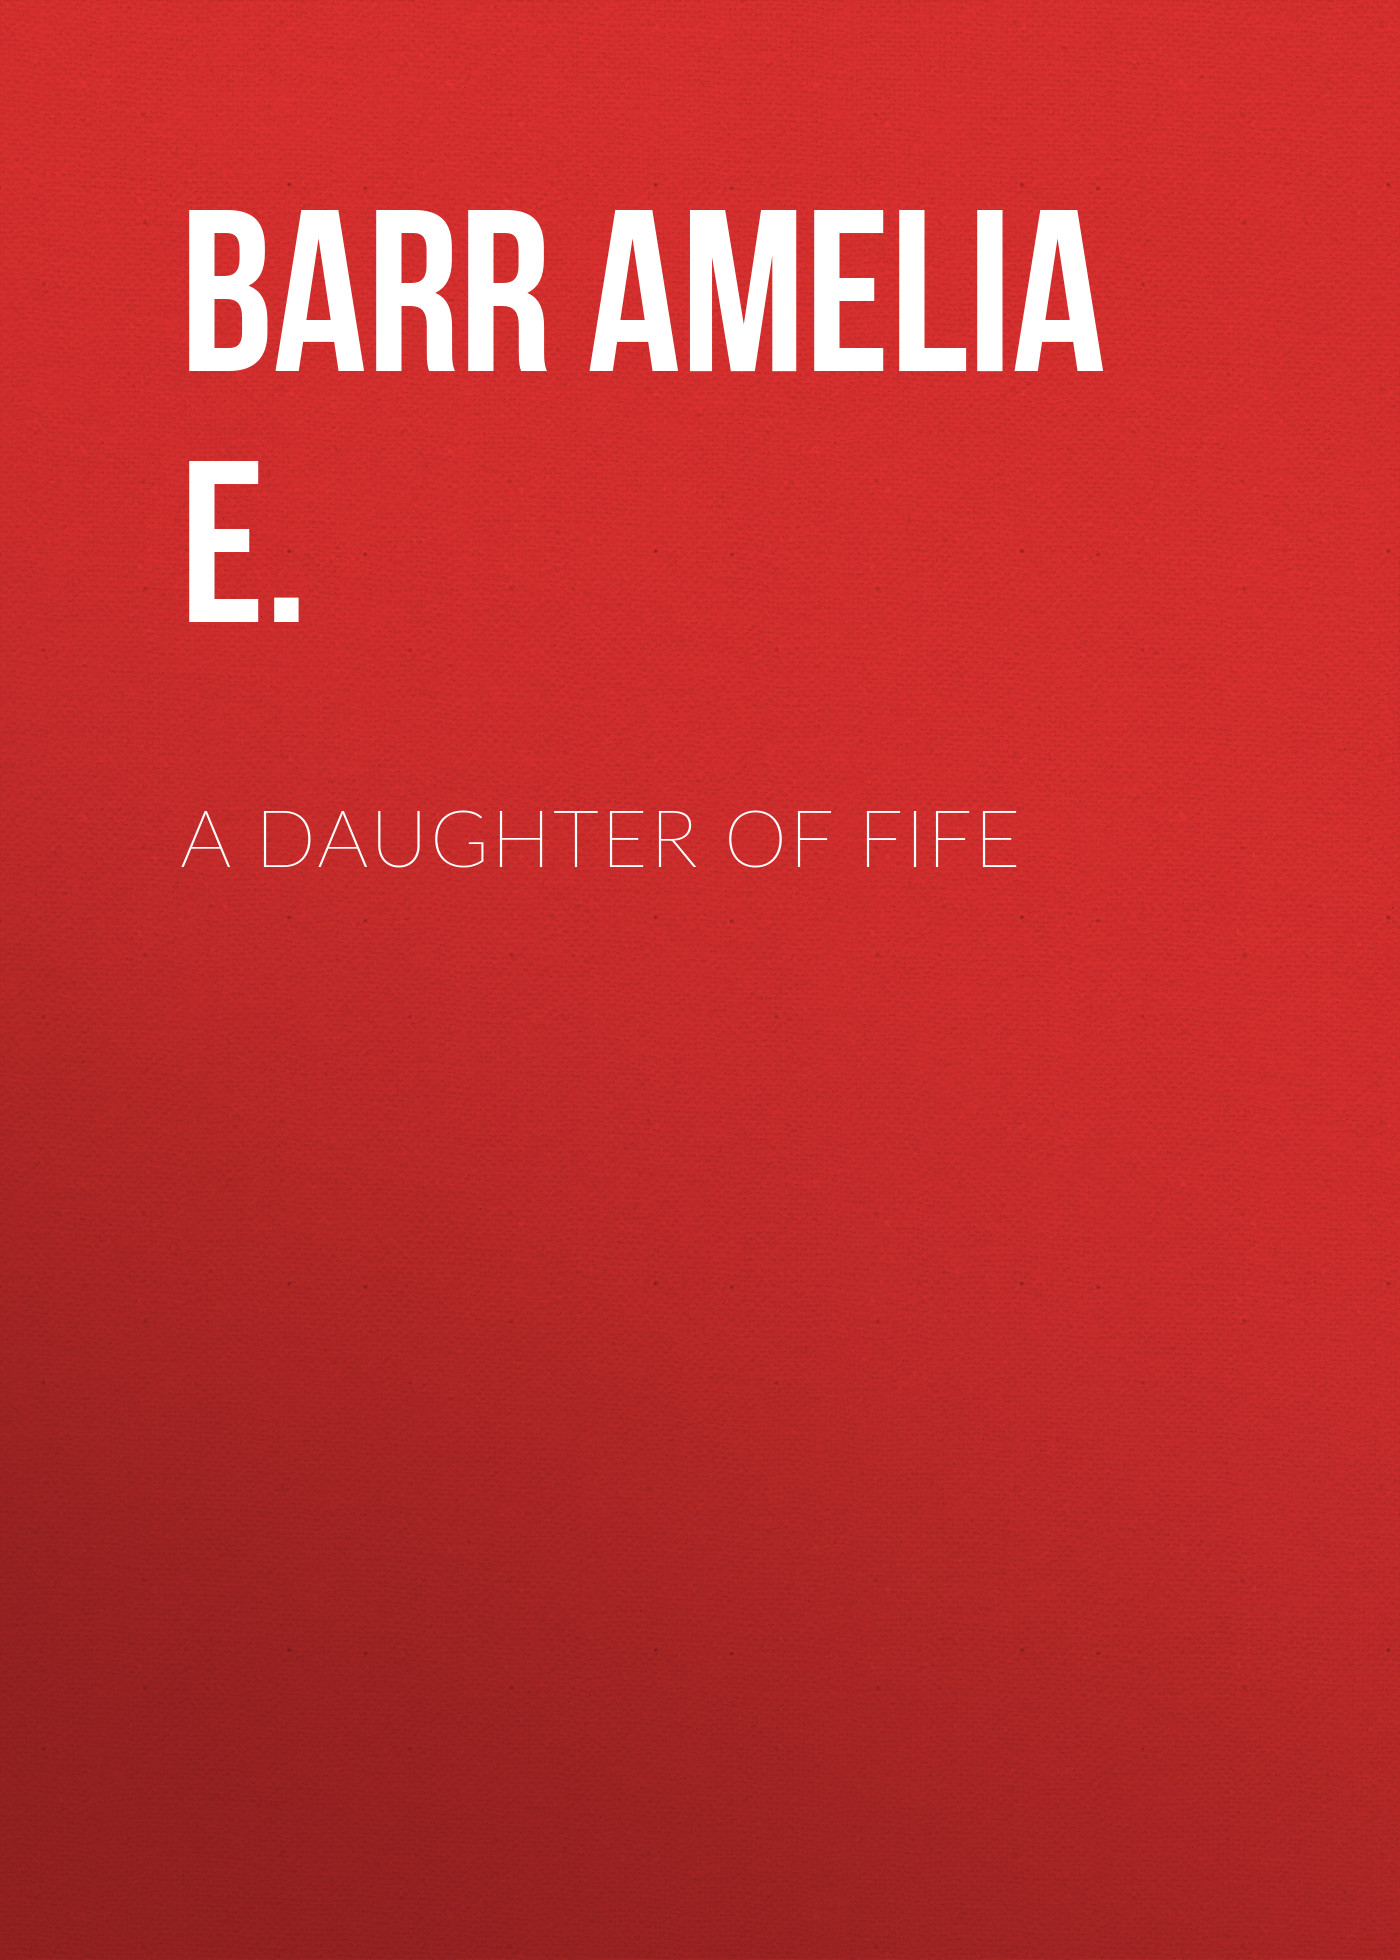 Книга A Daughter of Fife из серии , созданная Amelia Barr, может относится к жанру Зарубежная классика, Зарубежная старинная литература. Стоимость электронной книги A Daughter of Fife с идентификатором 36366822 составляет 0 руб.